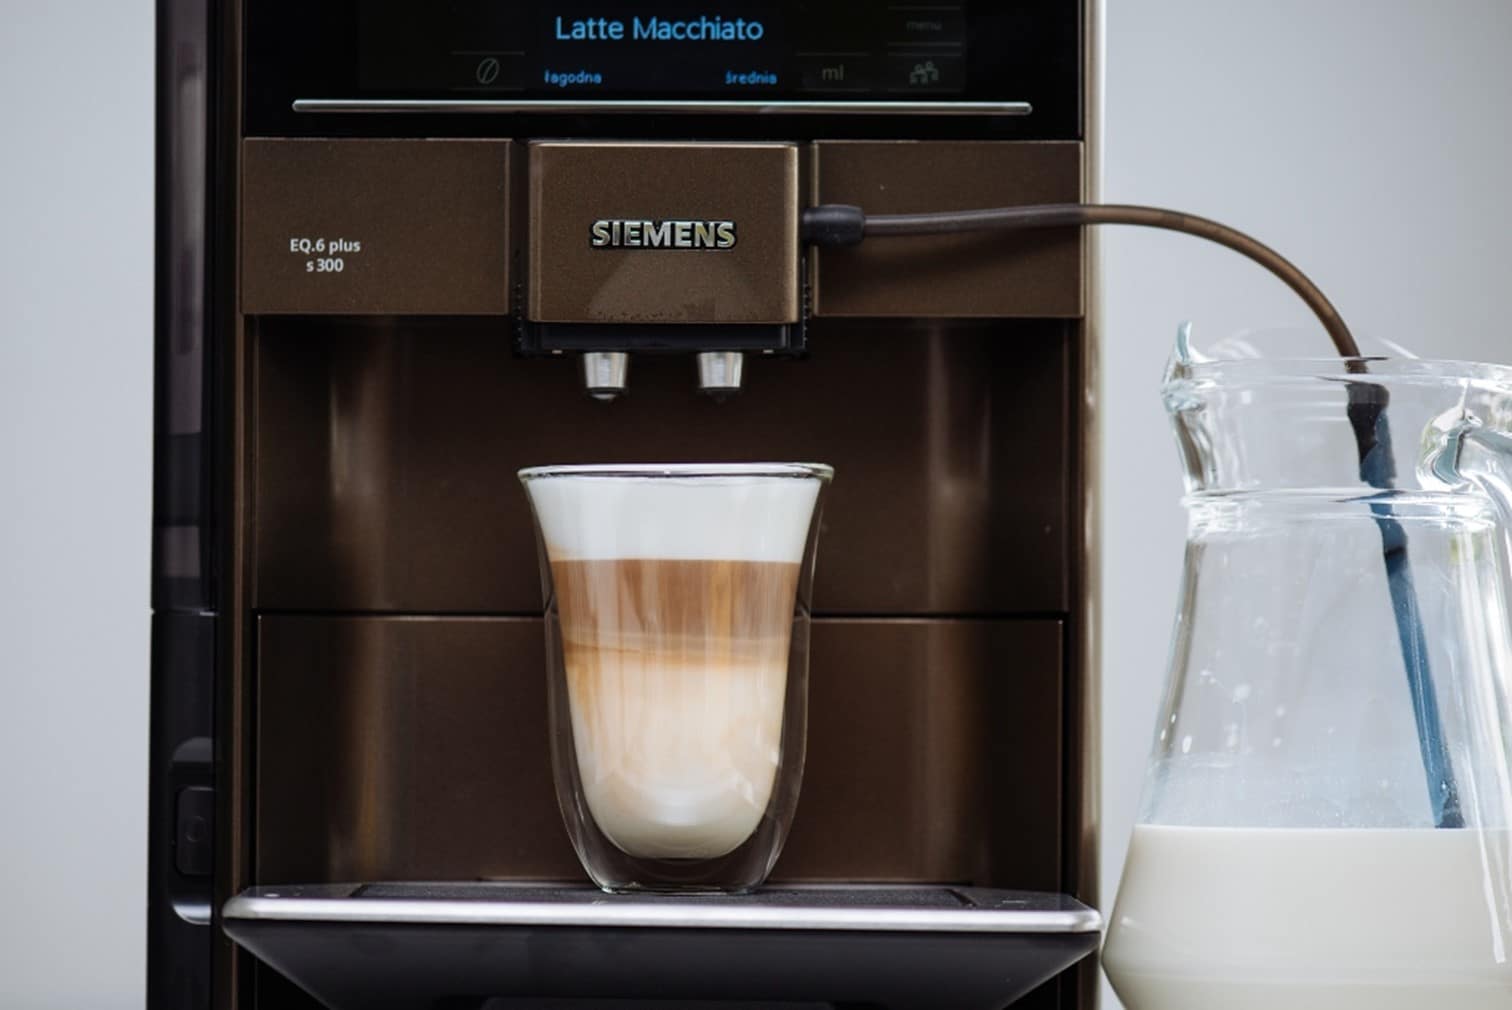 latte macchiato - rodzaj kawy z ekspresu Siemens SE.6 Plus